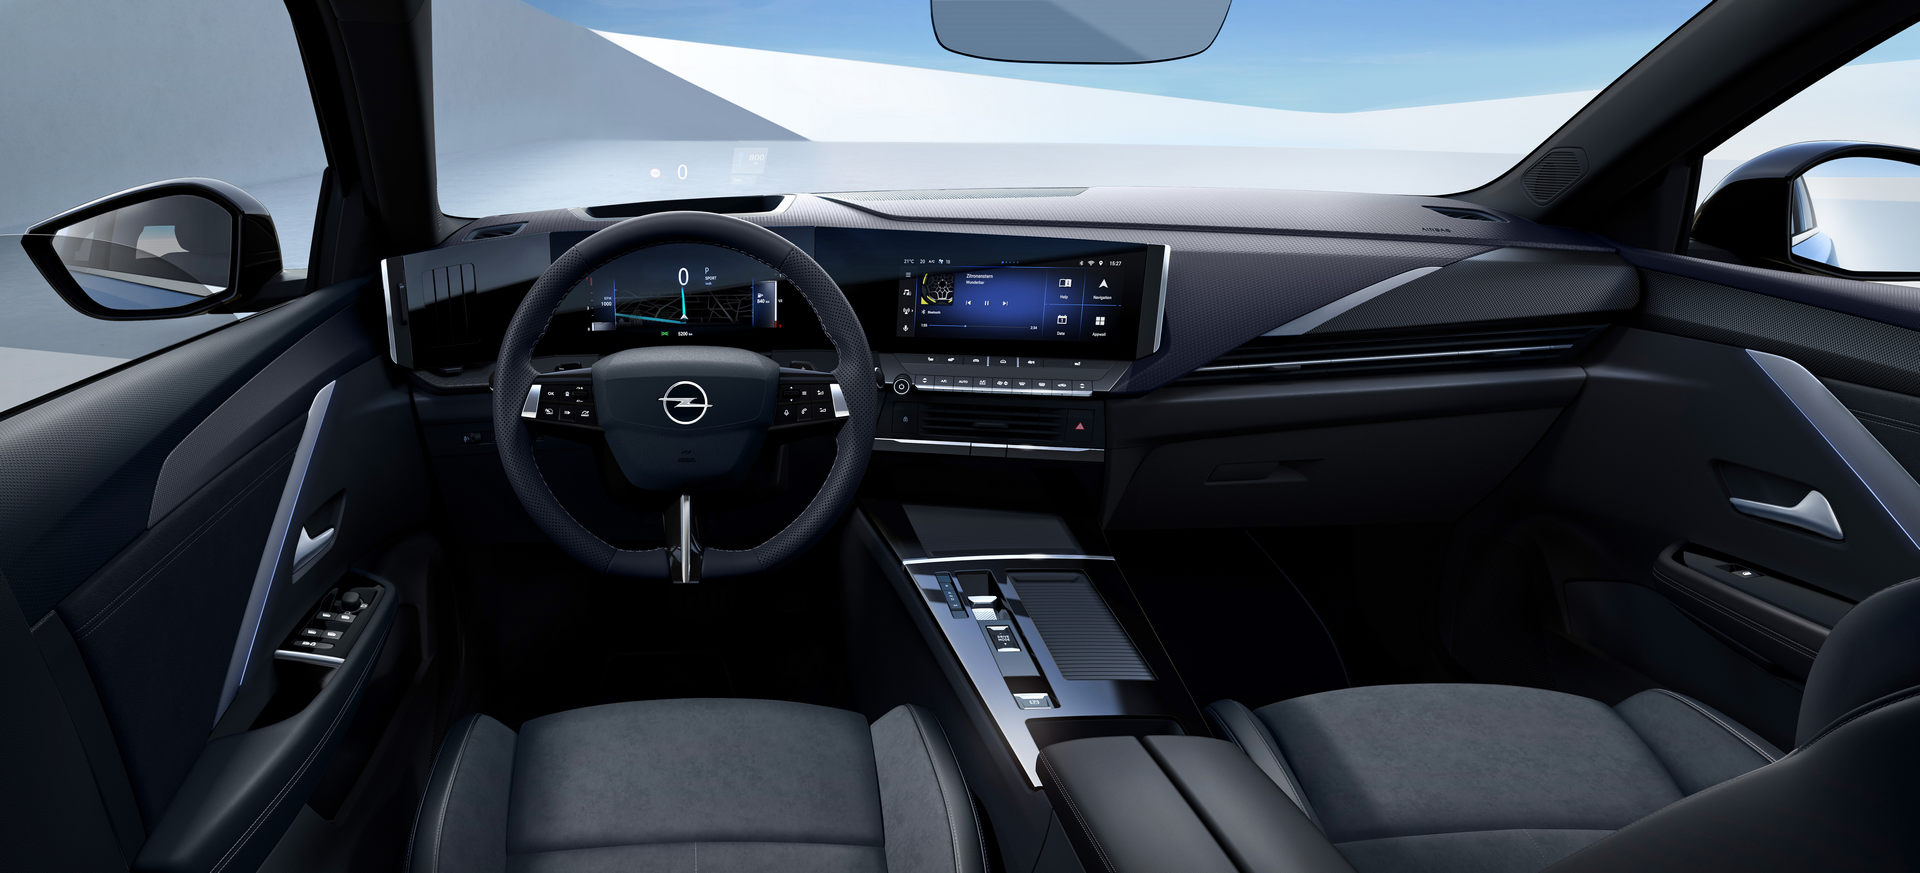 Компания Opel представила в Европе универсал Astra Sports Tourer нового поколения